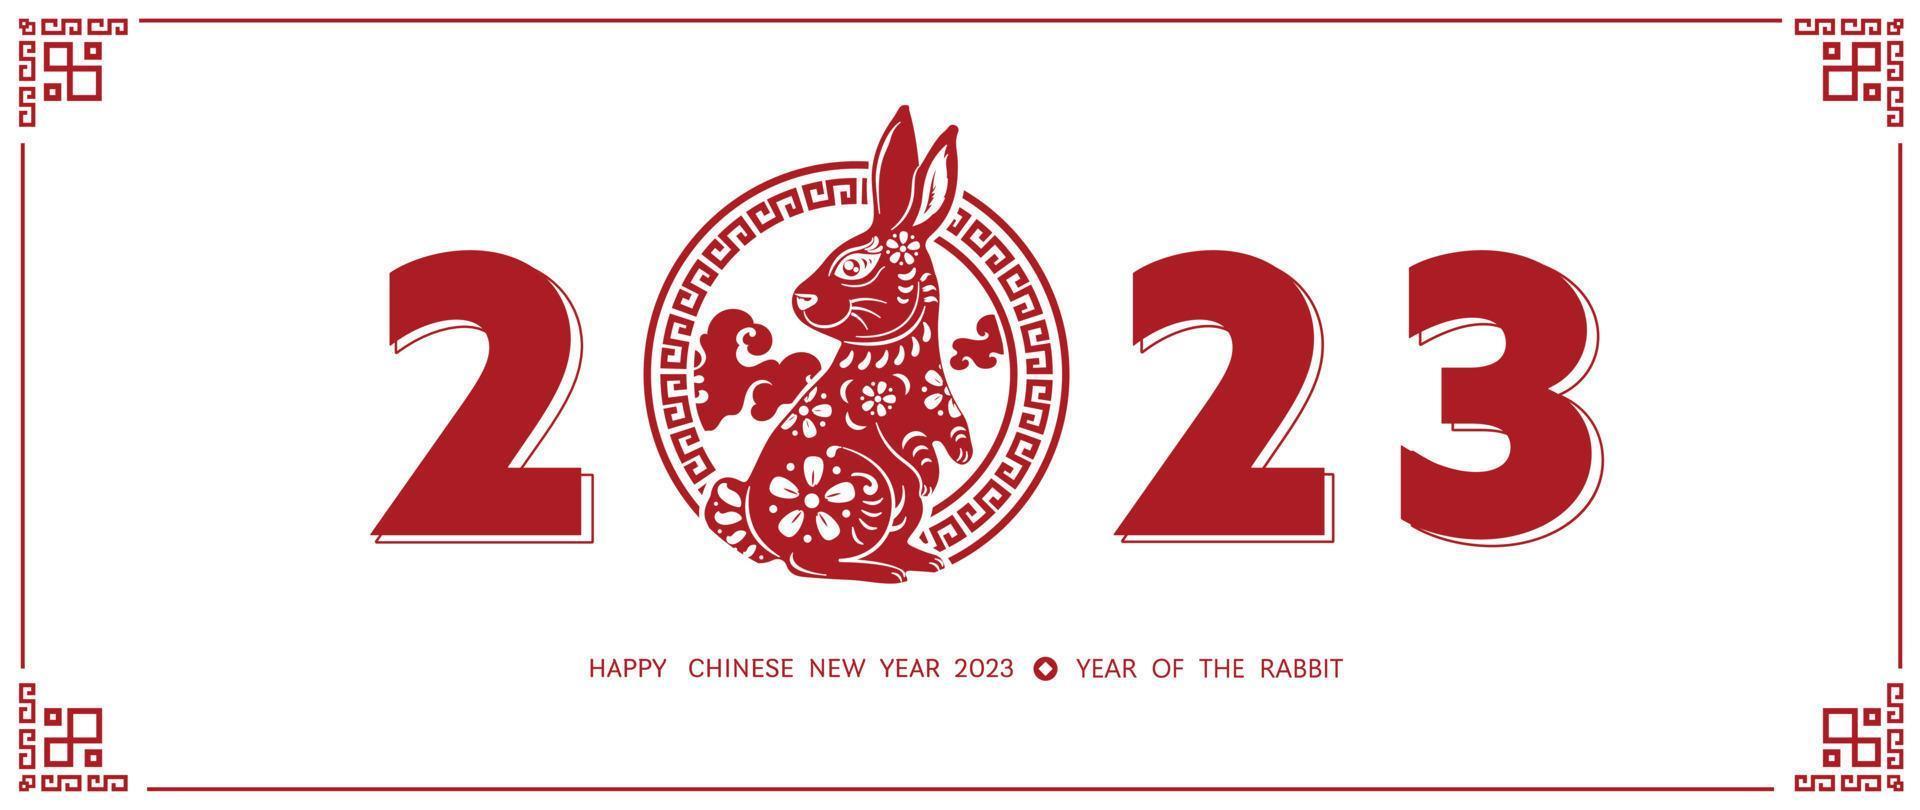 kinesisk ny år 2023 år av de kanin. lunar ny år röd kanin zodiaken med kinesisk traditionell ram, blomma mönster och siffra på vit bakgrund design begrepp. vektor illustration.